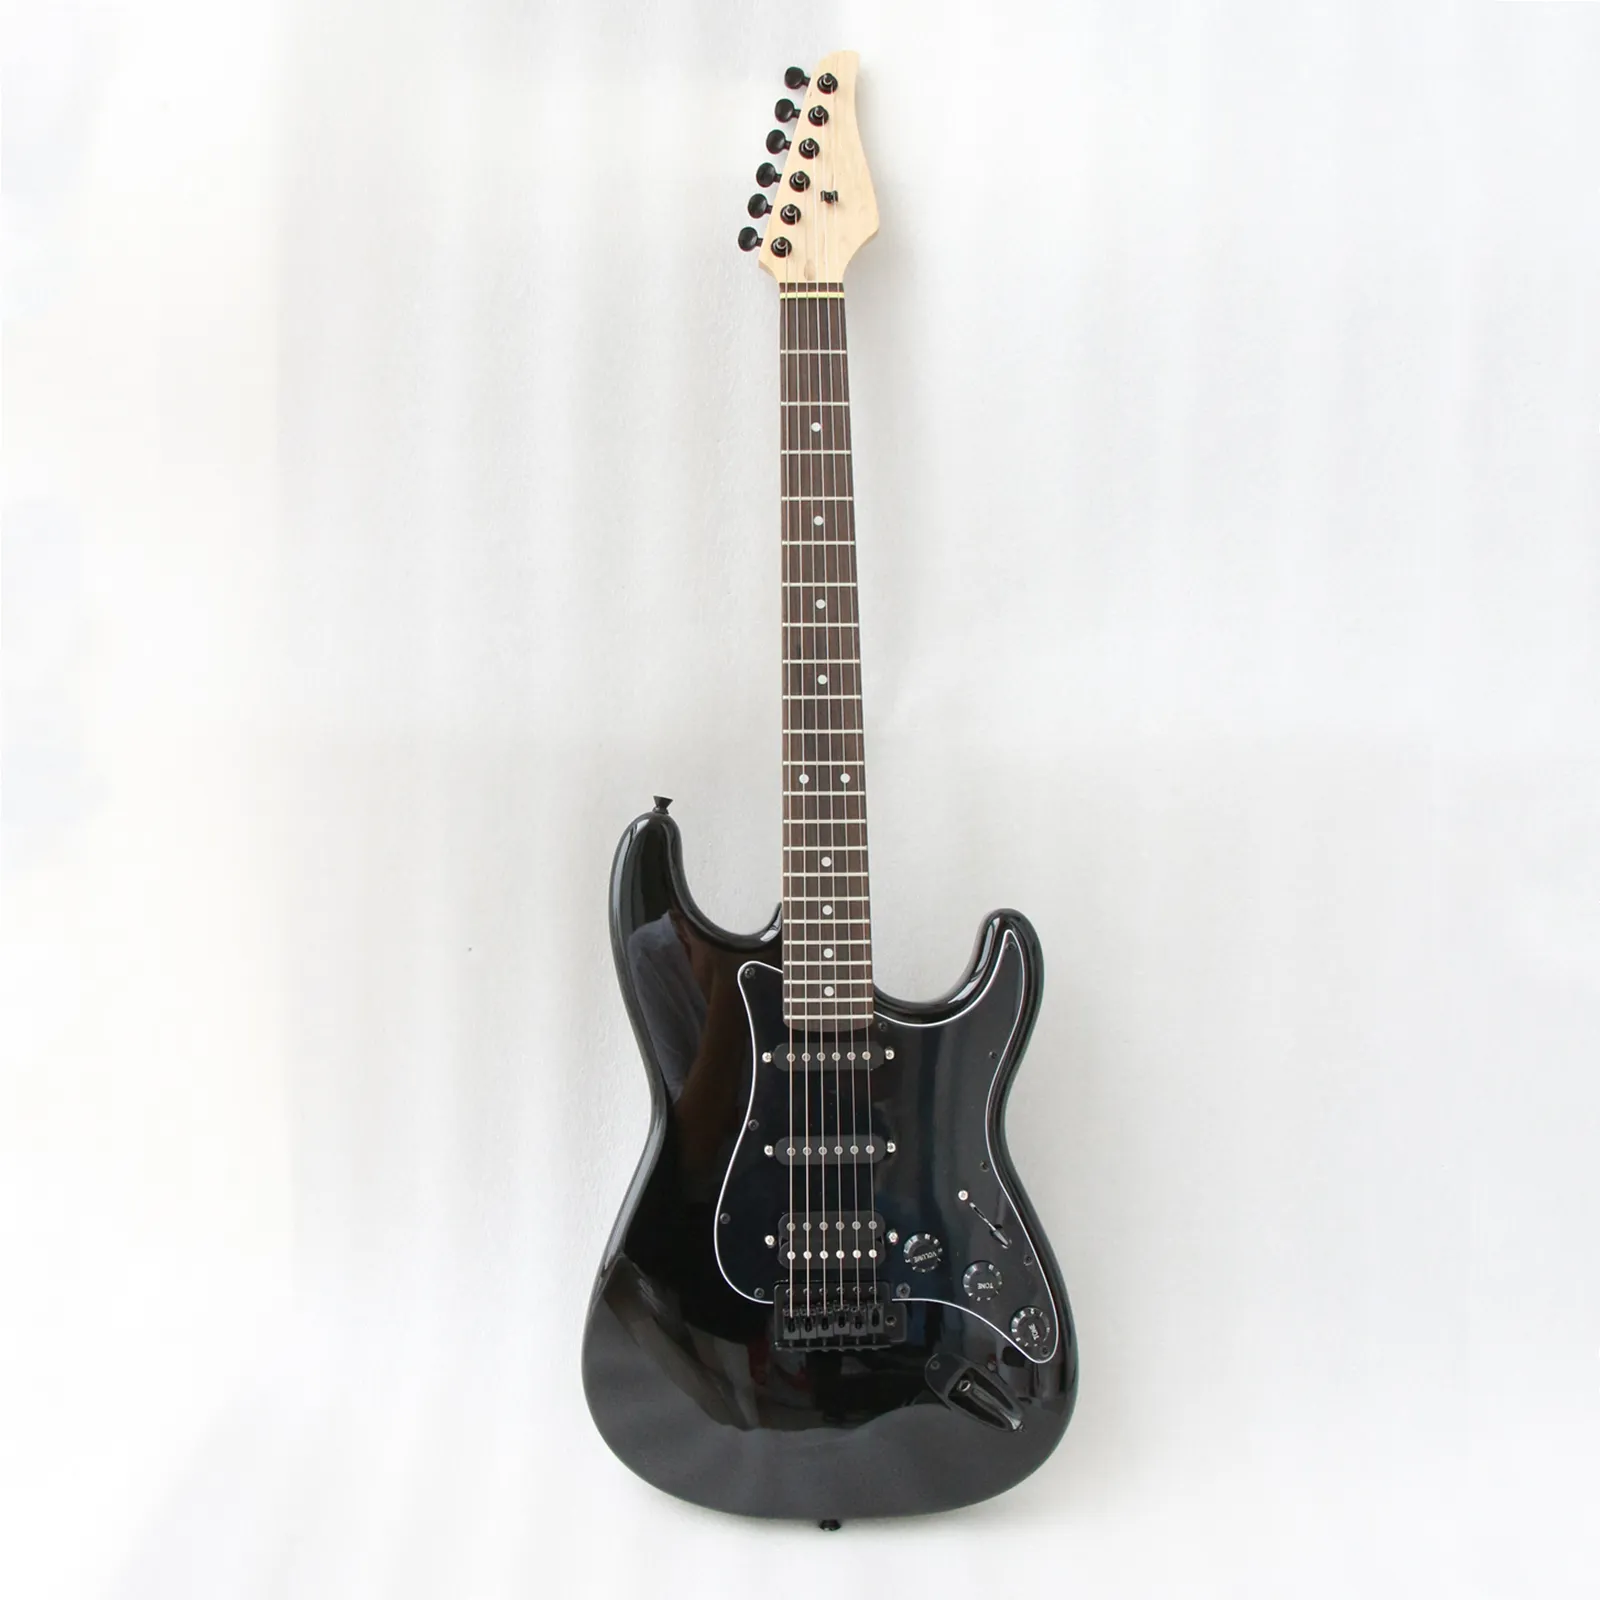 Guitarra elétrica de alta qualidade Profissional 39 inch Guitarra barata Fábrica Guitarra high end